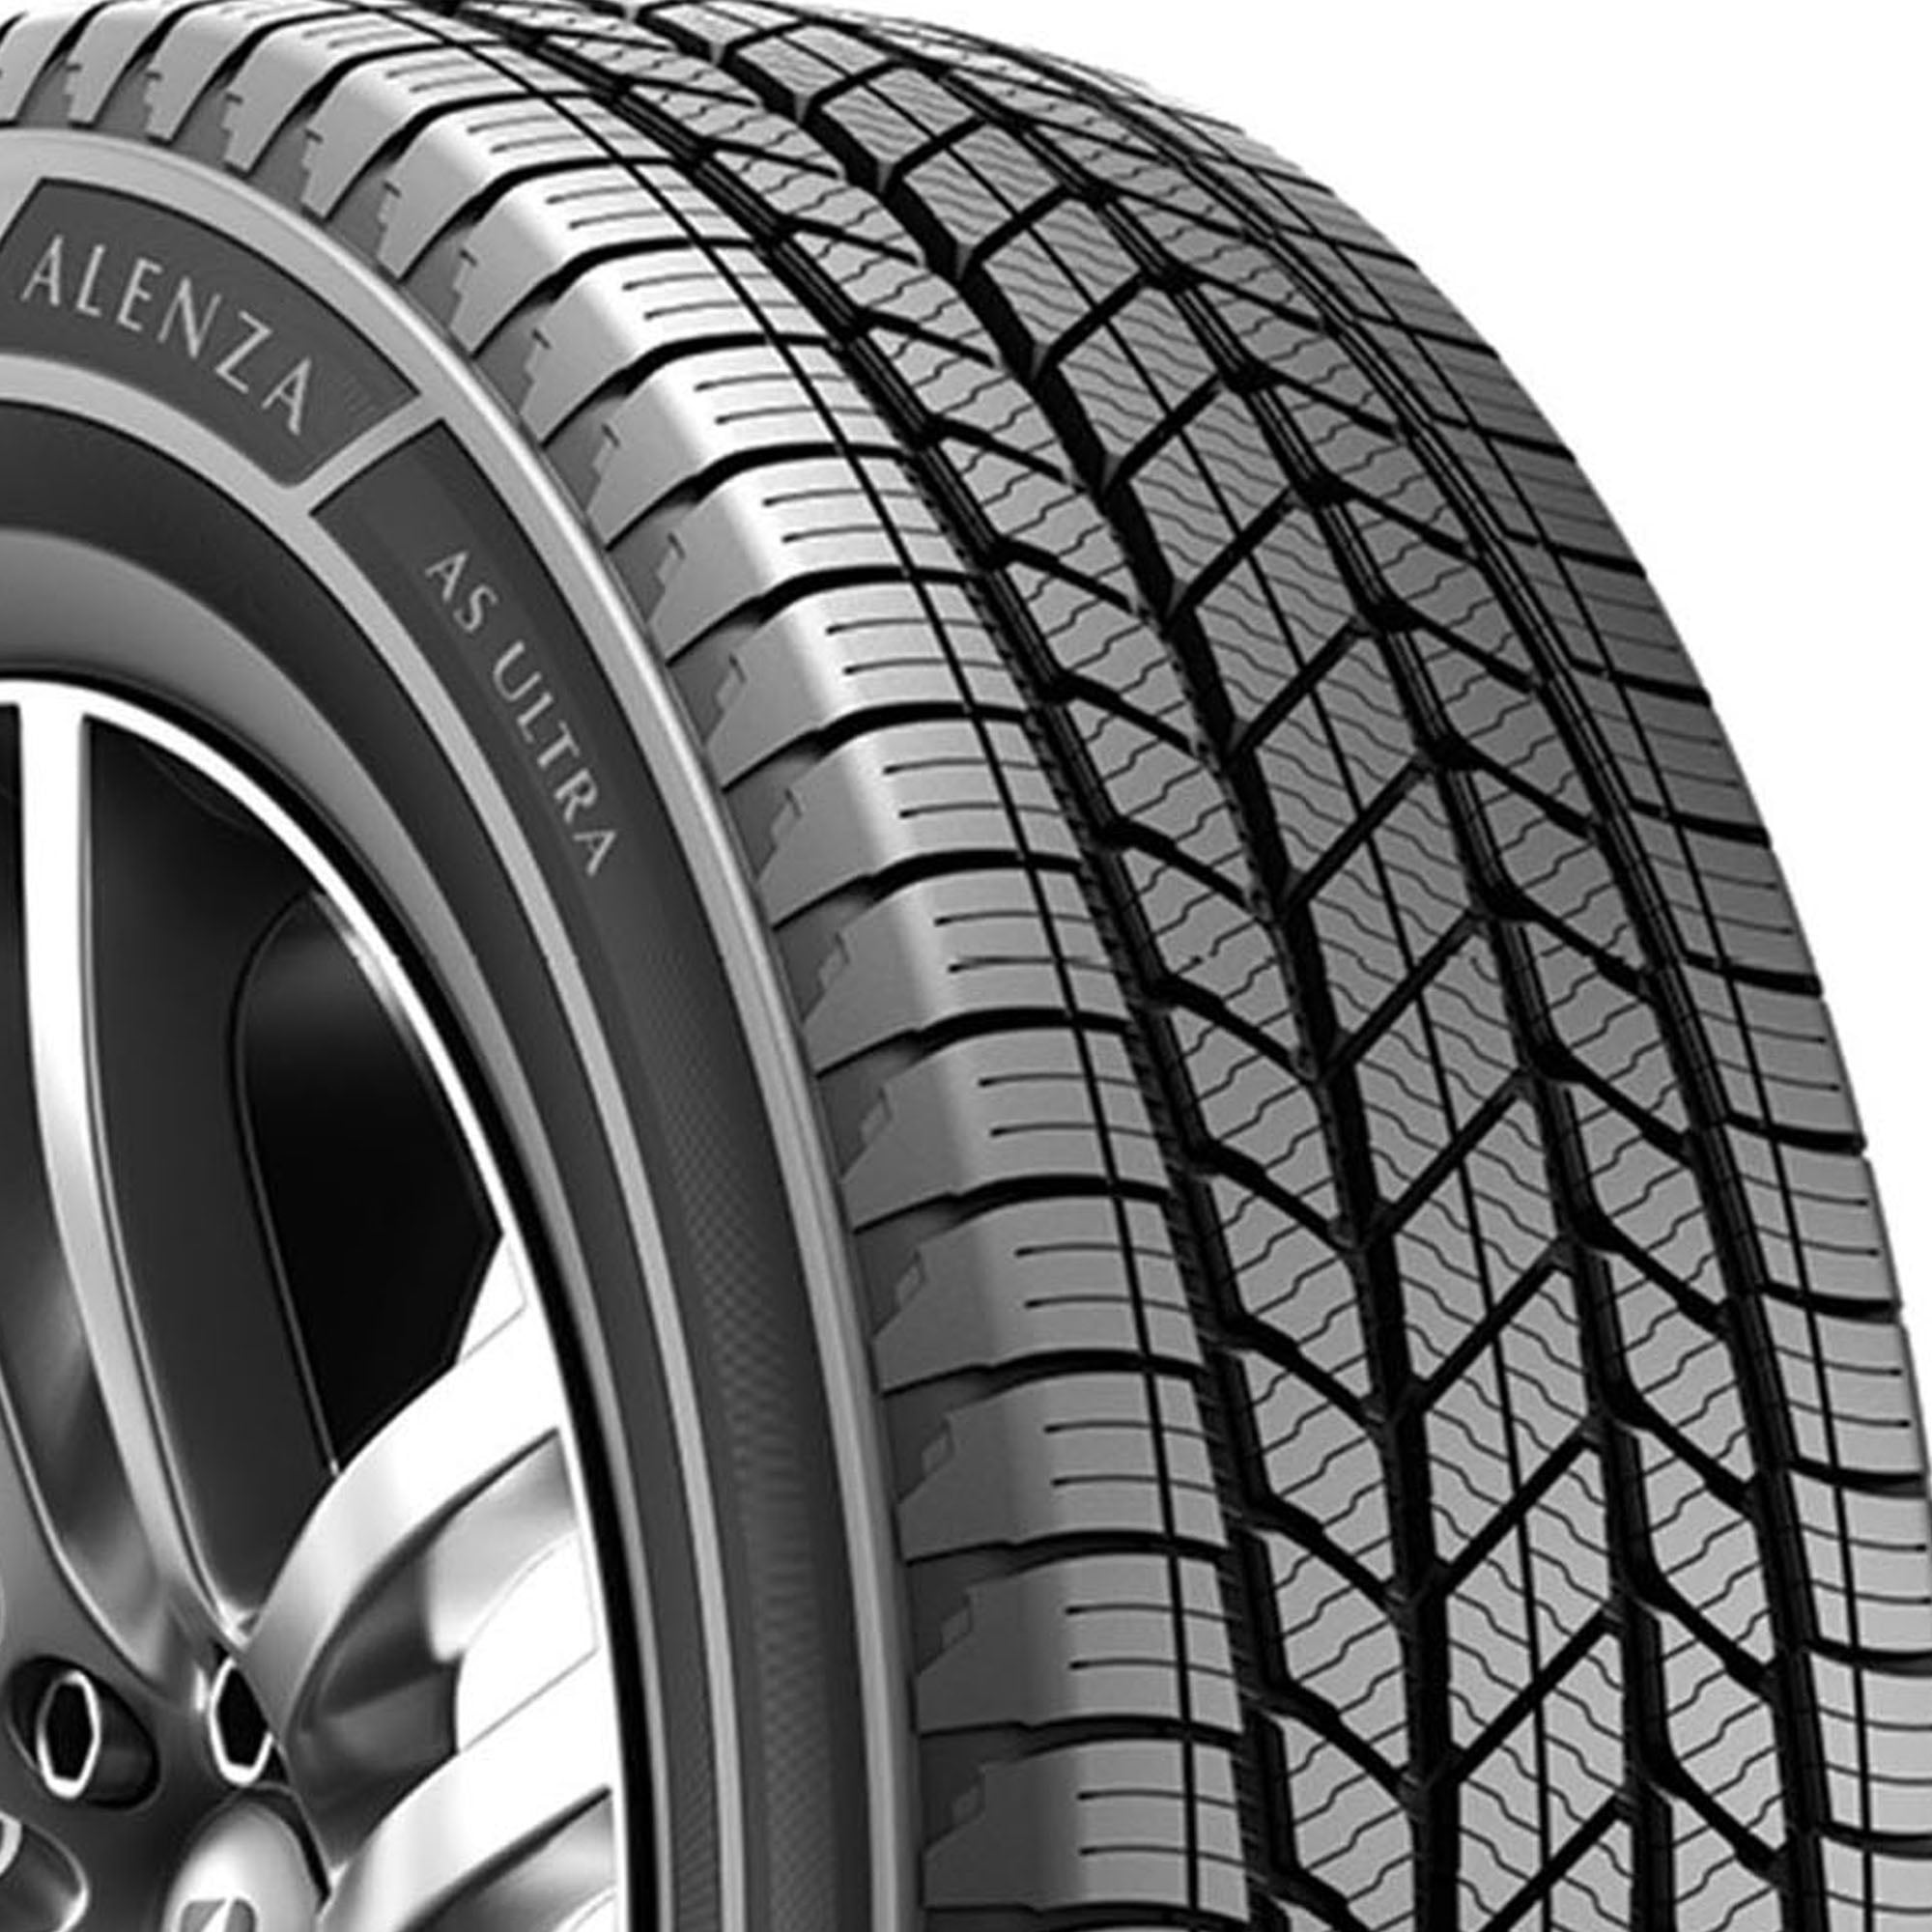 Bridgestone Alenza Tire 255/60R18 All Ultra A/S XL 112V SUV/Crossover Season